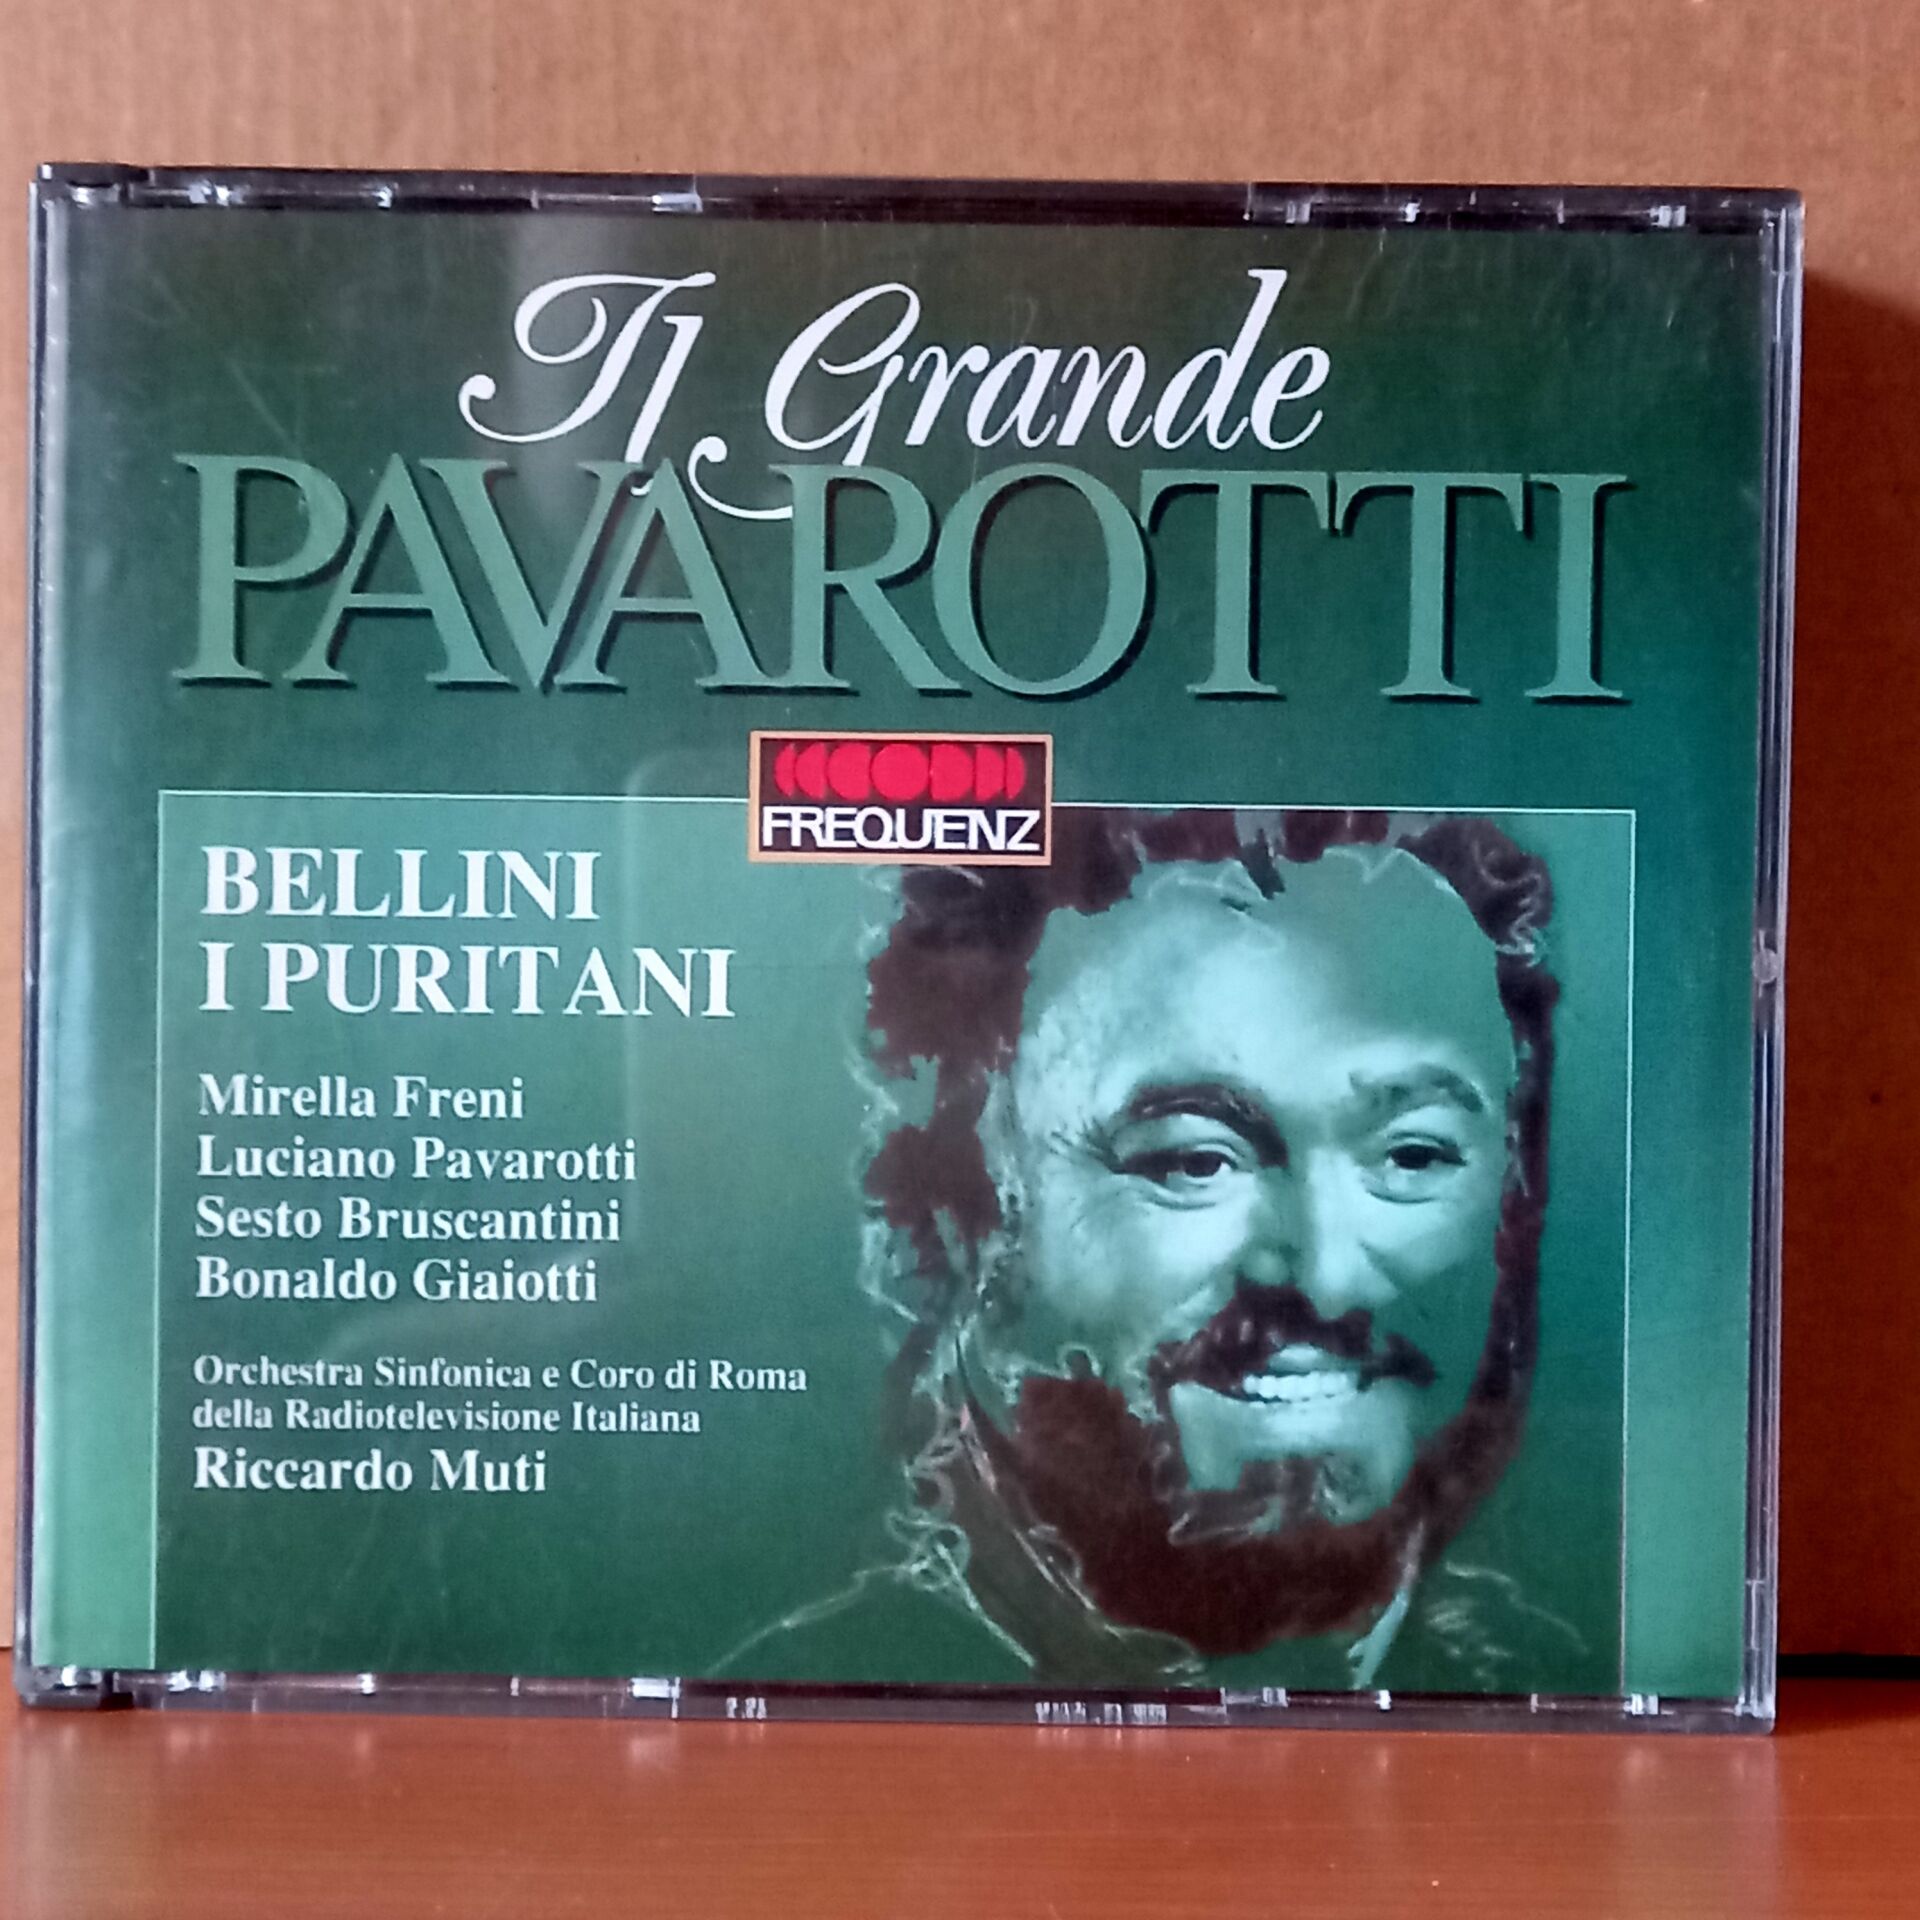 IL GRANDE PAVAROTTI / BELLINI: I PURITANI / MIRELLA FRENI, LUCIANO PAVAROTTI, SESTO BRUSCANTINI, BONALDO GIAIOTTI, ORCHESTRA SINFONICA E CORO DI ROMA DELLA RADIOTELEVISIONE ITALIANA, RICCARDO MUTI (1991) - 2CD 2.EL